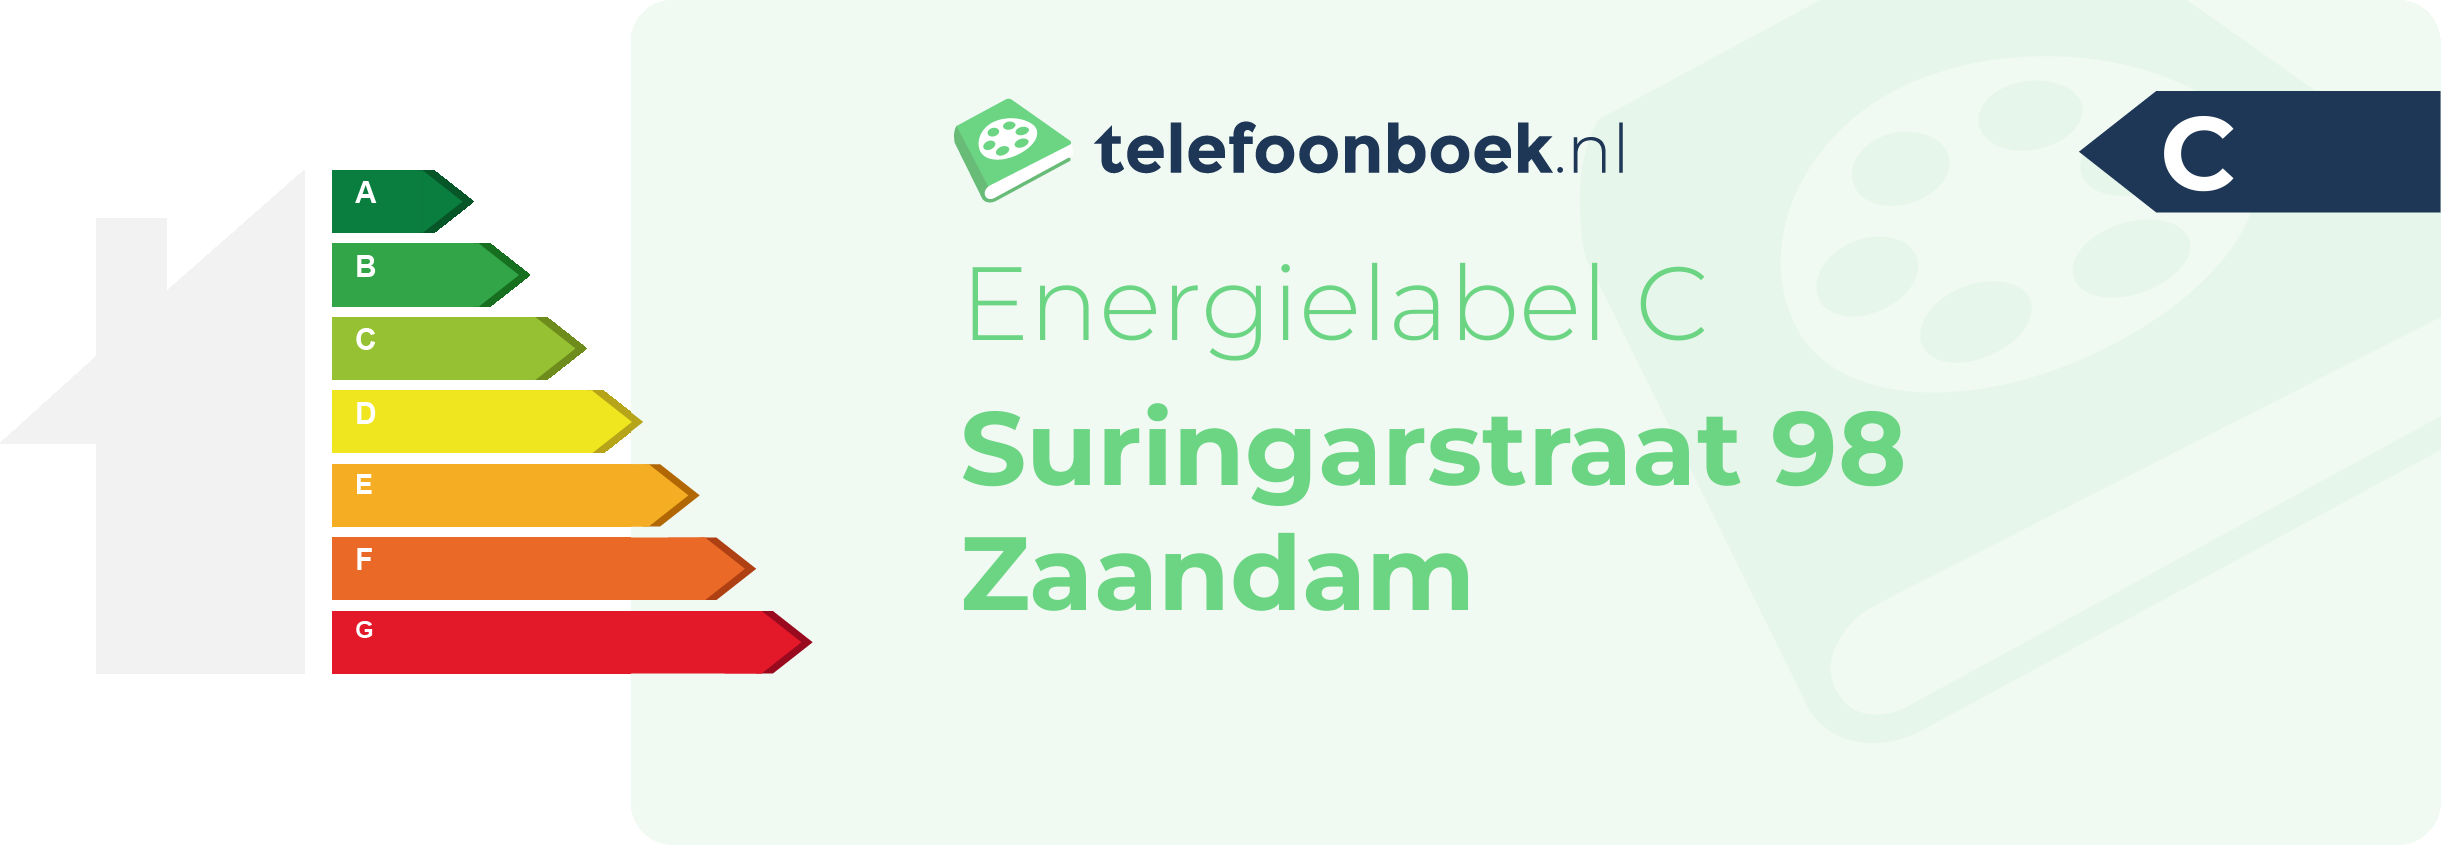 Energielabel Suringarstraat 98 Zaandam